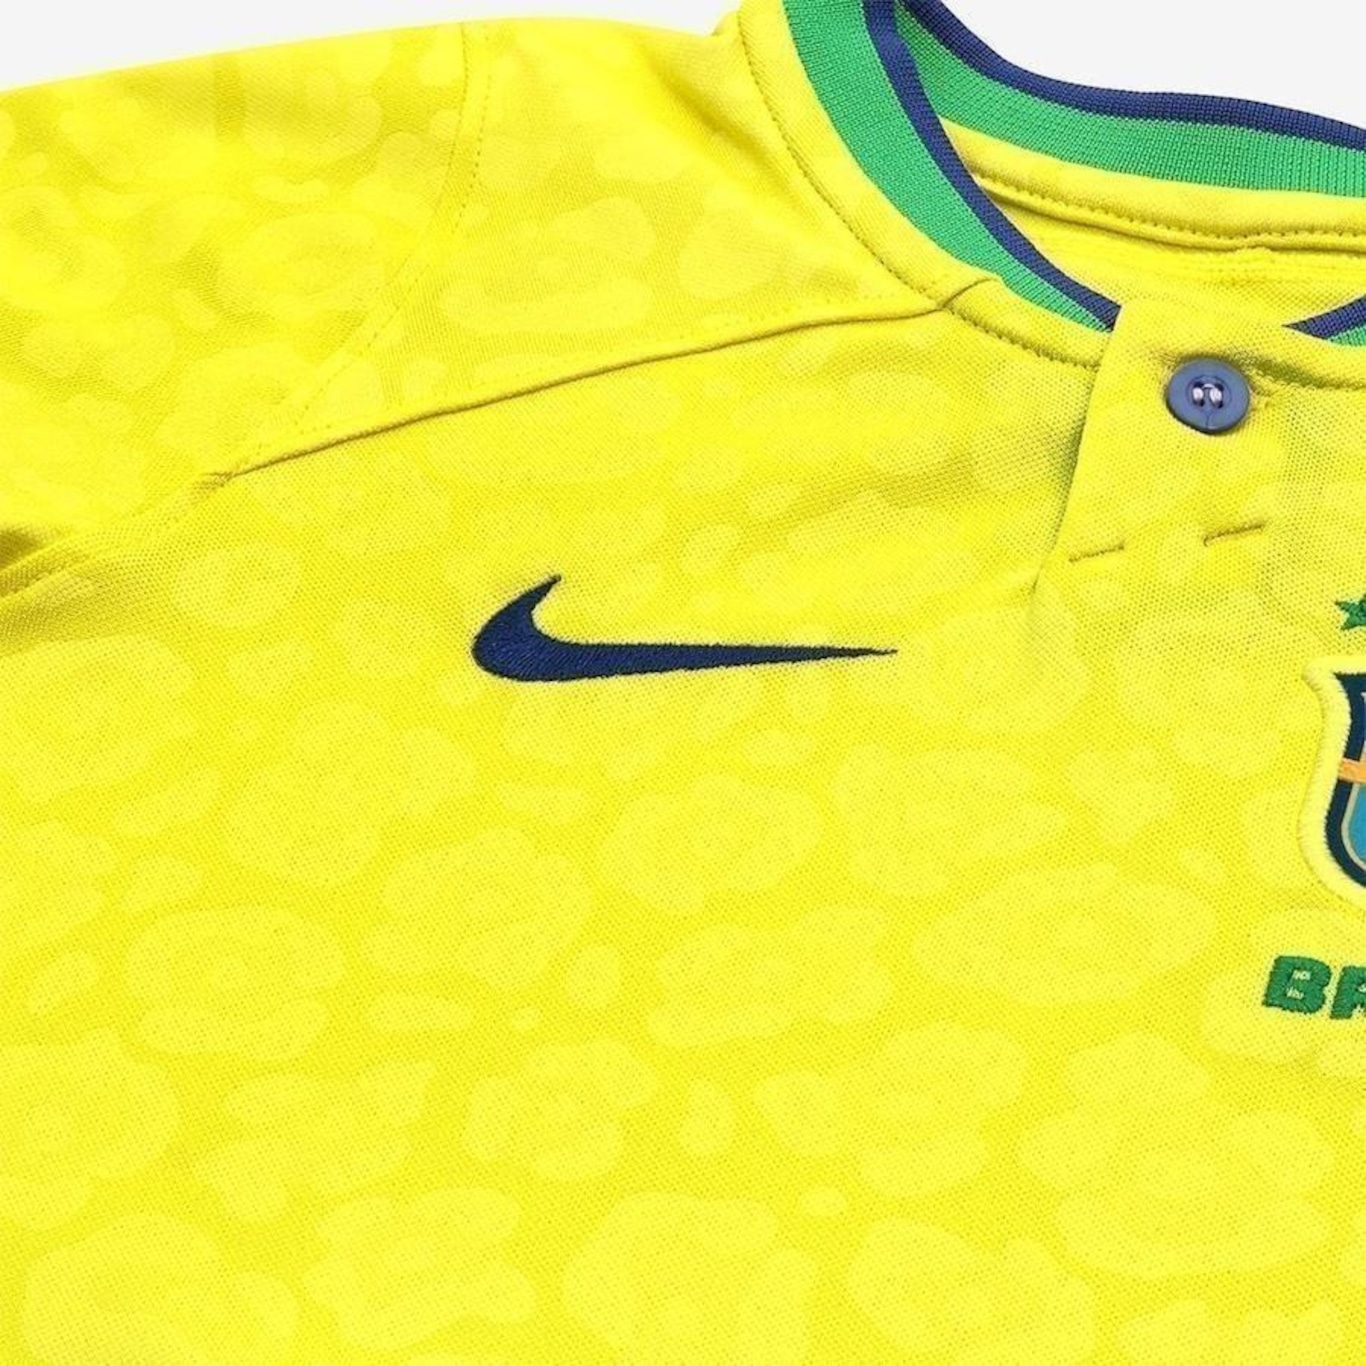 Camisa do Brasil Nike Torcedor Pro I 22/23 - Infantil - Foto 4